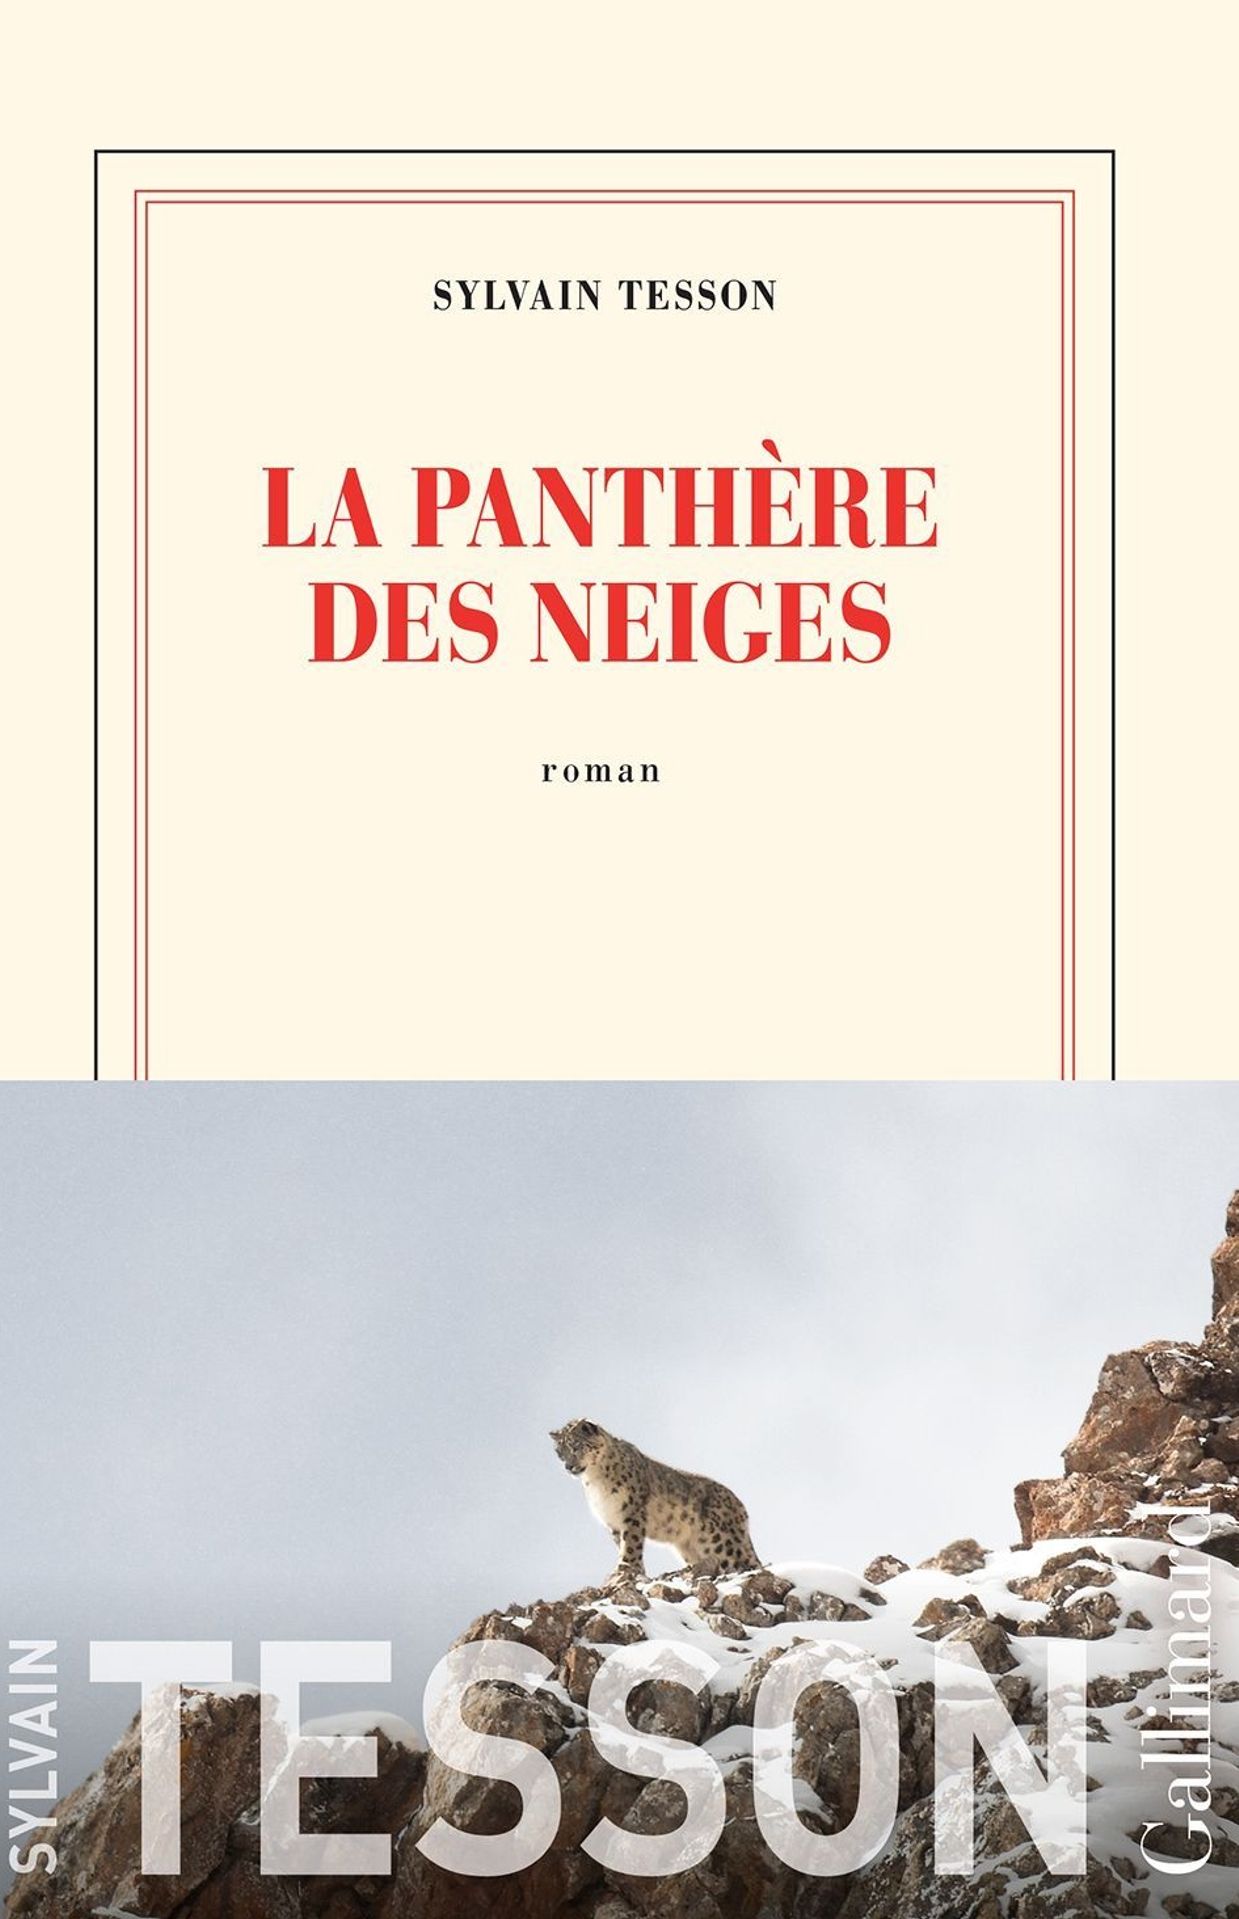 "La panthère des neiges" de Sylvain Tesson (Gallimard)